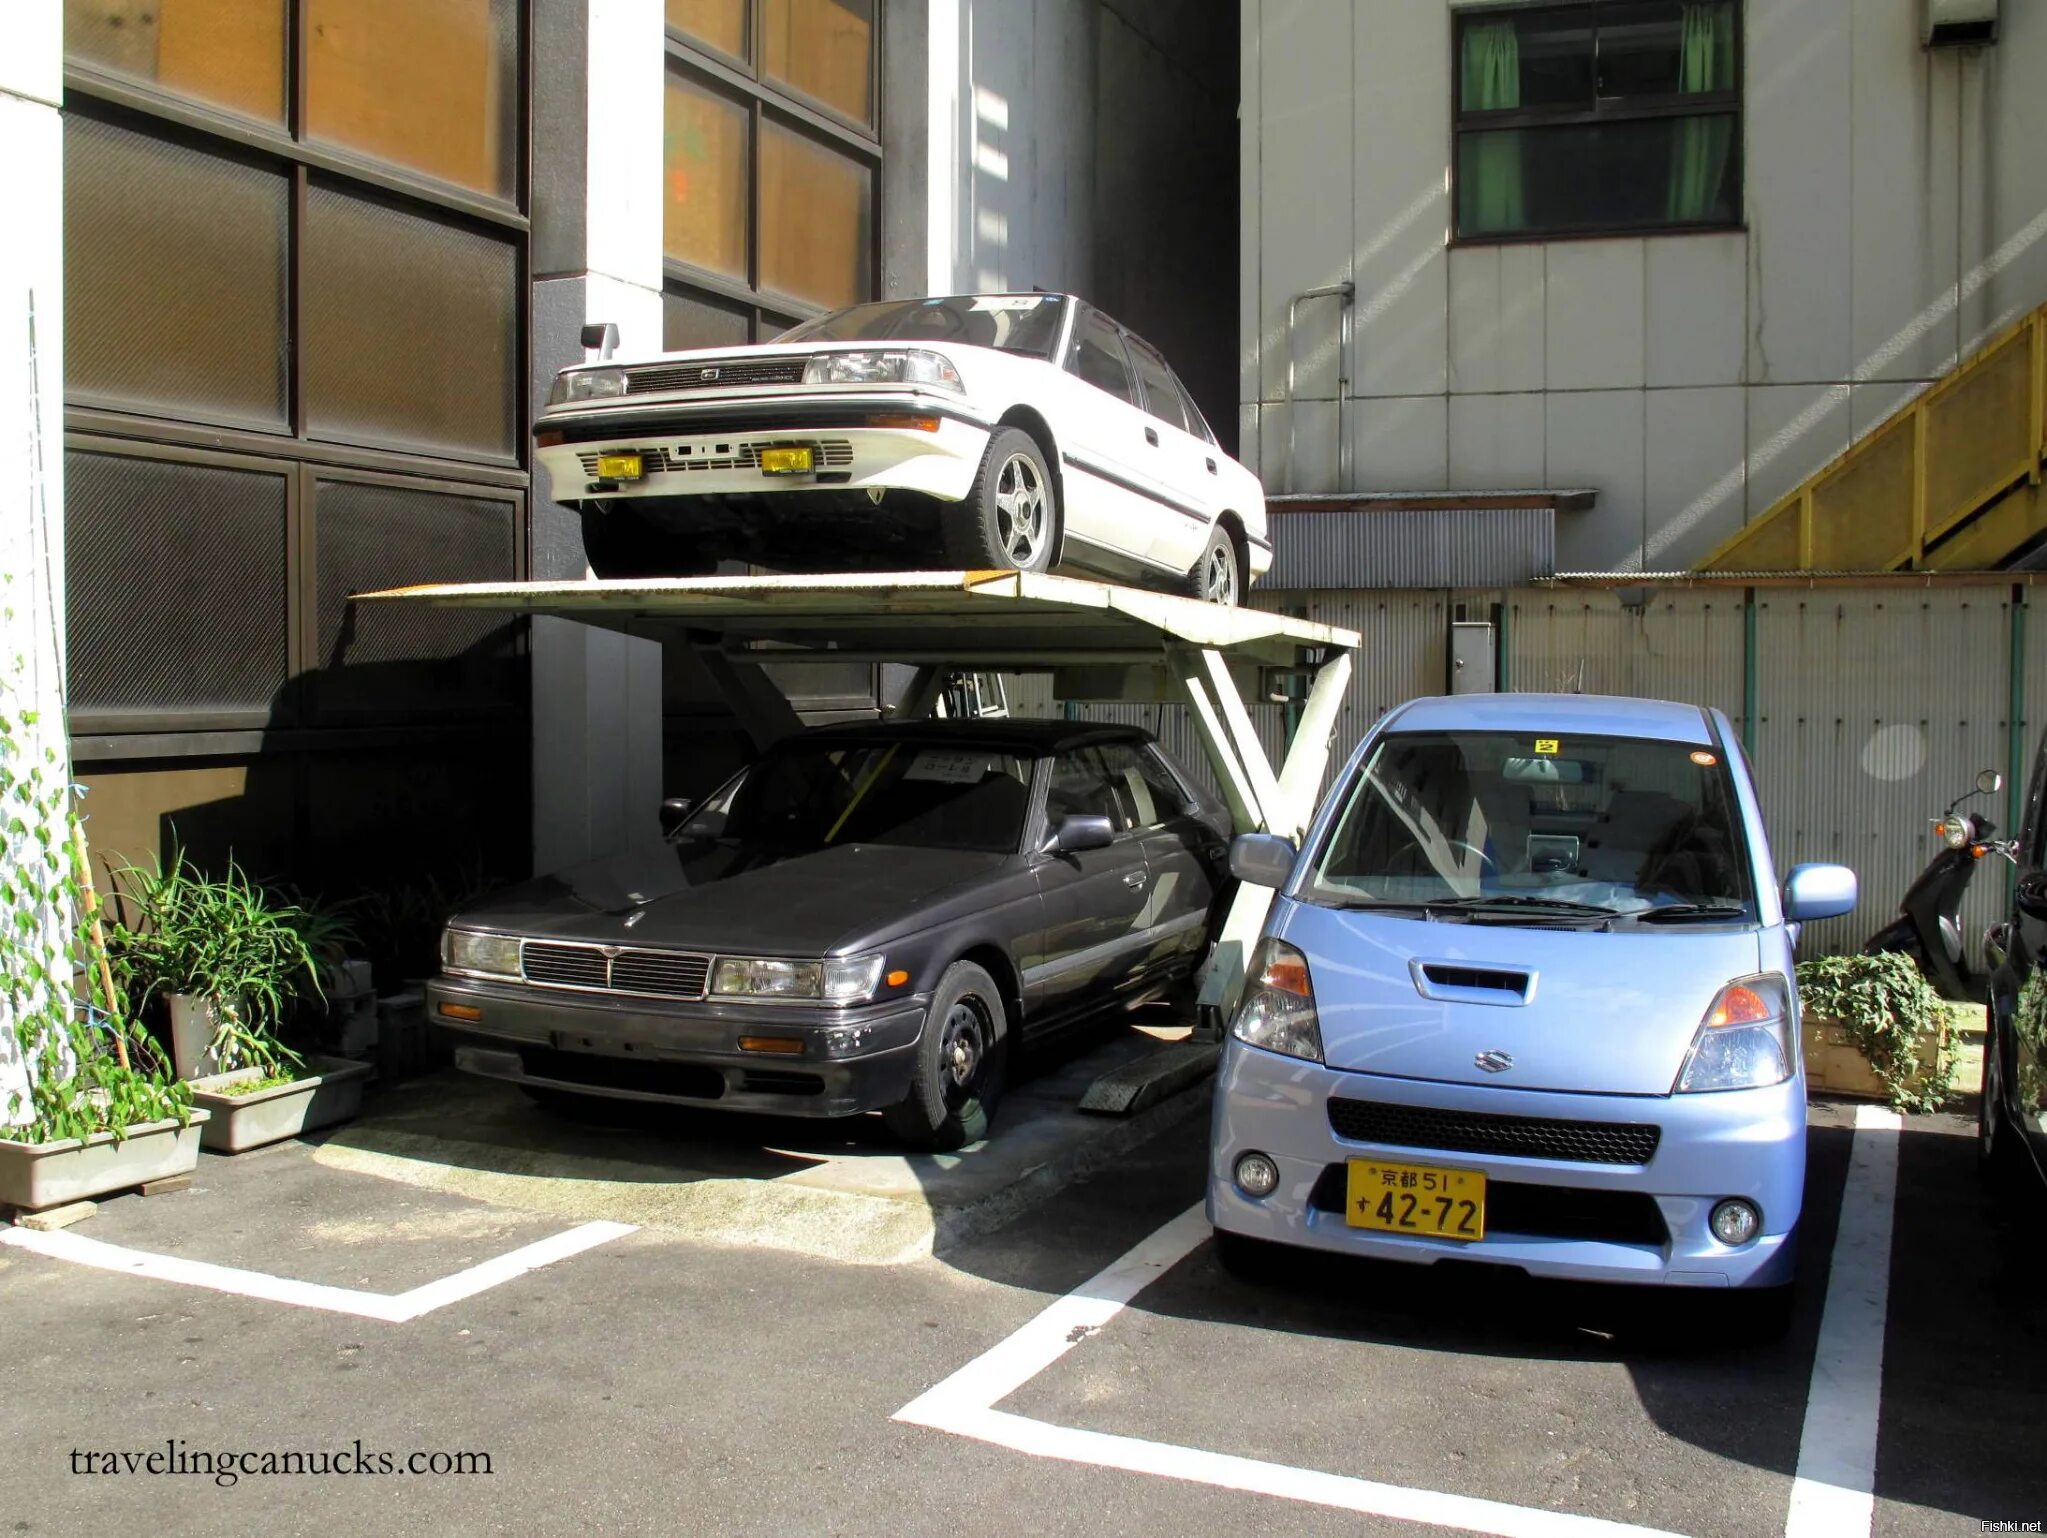 Регистрация авто из японии. Парковка в Японии. Автостоянка в Японии. Двухъярусные парковки в Японии. Японская многоуровневая парковка.